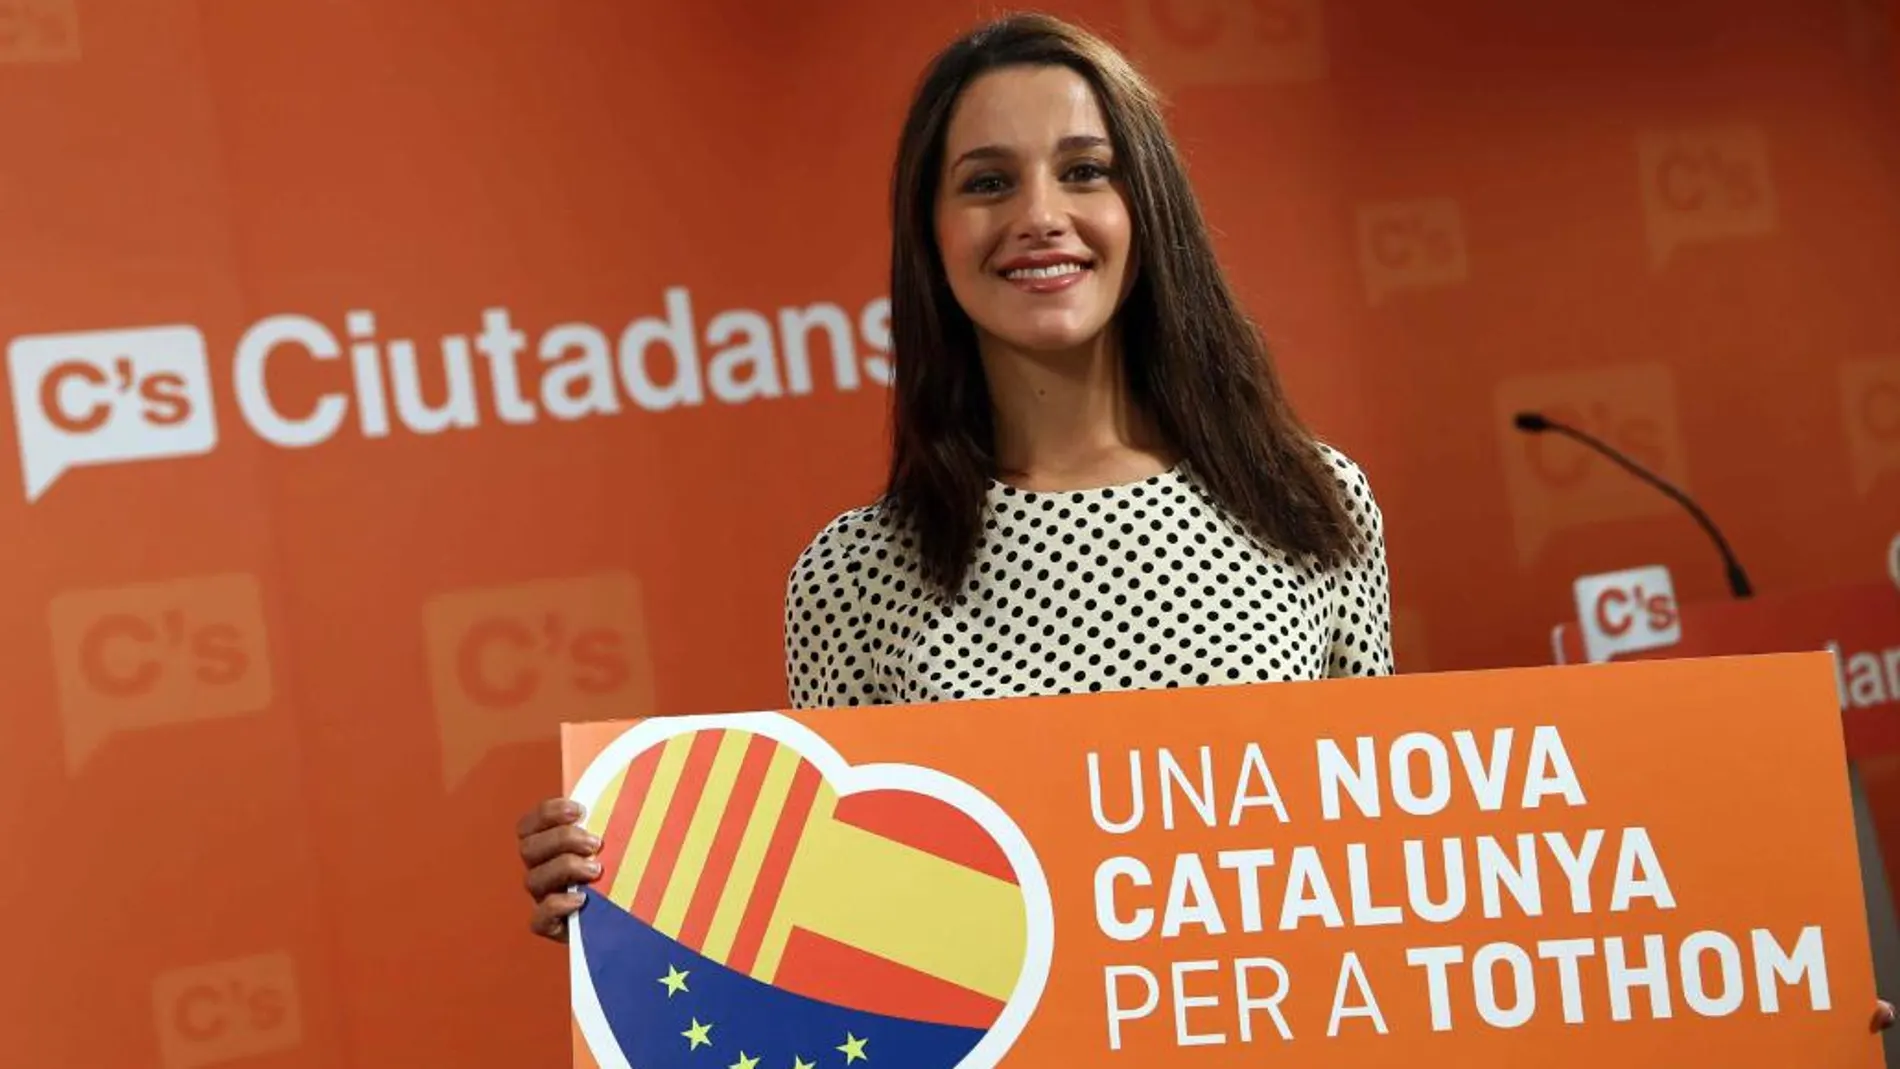 La candidata de Ciutadans a la presidencia de la Generalitat, Inés Arrimadas